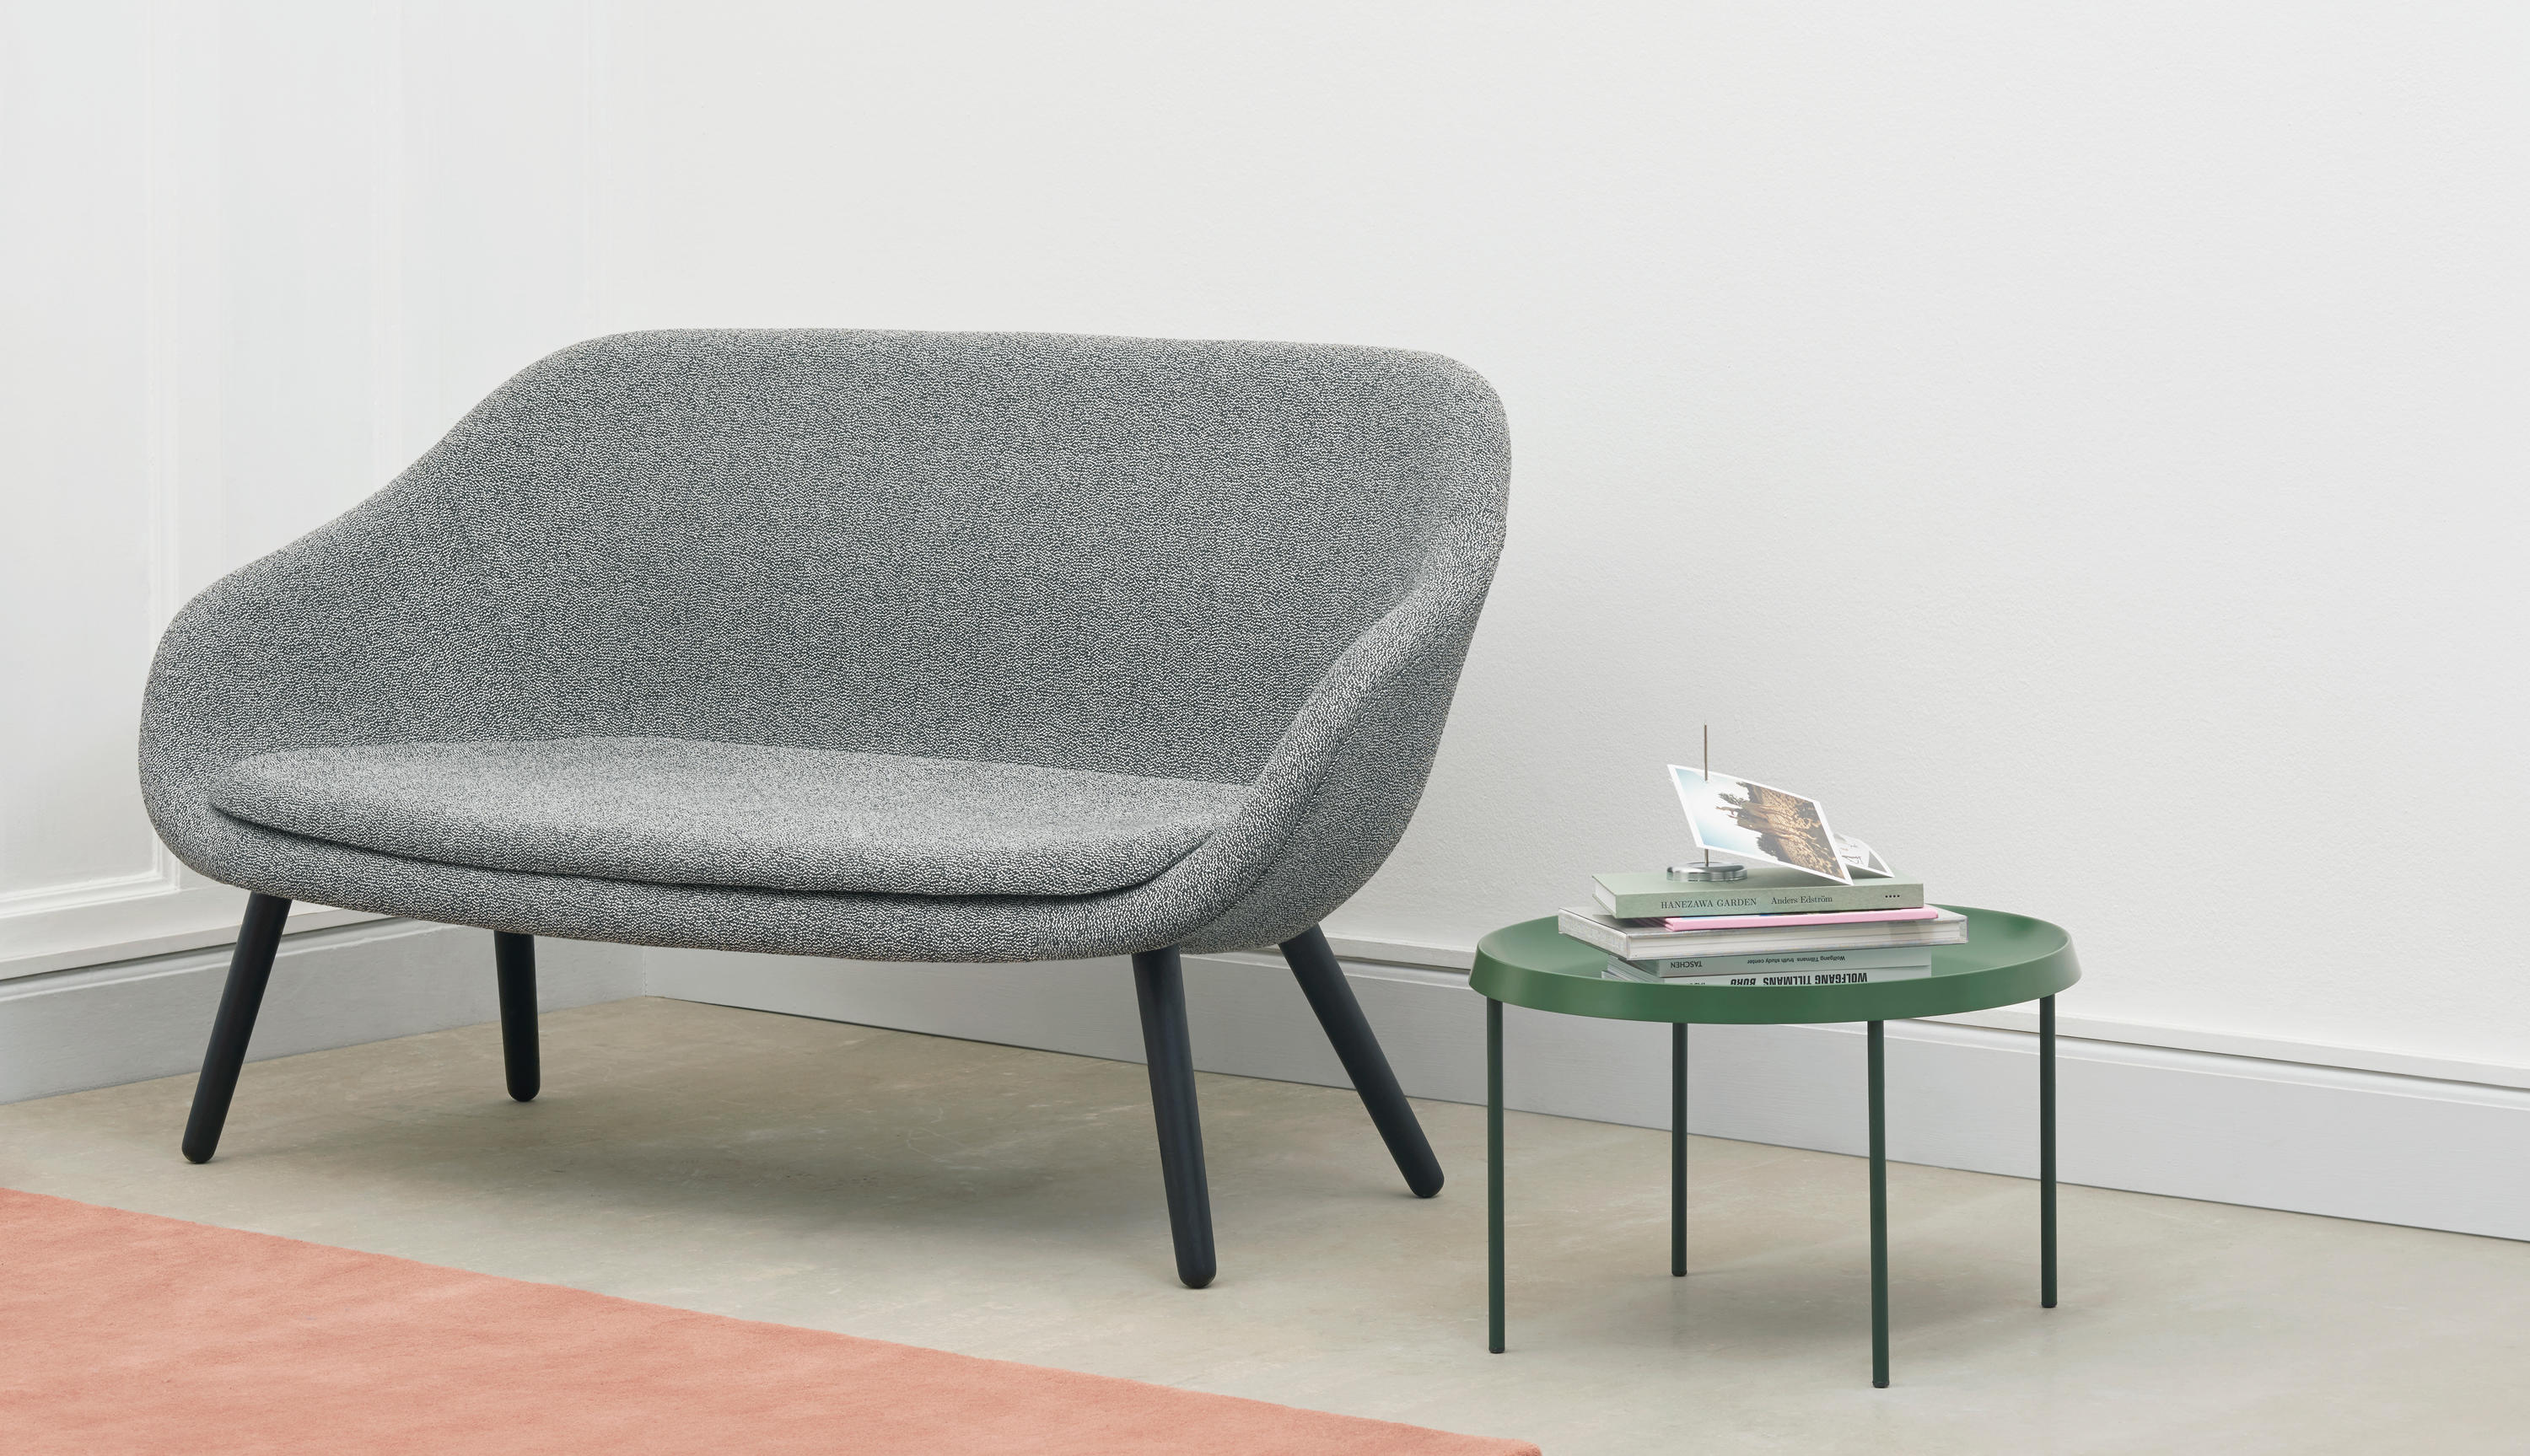 About A Lounge Sofa | Architonic